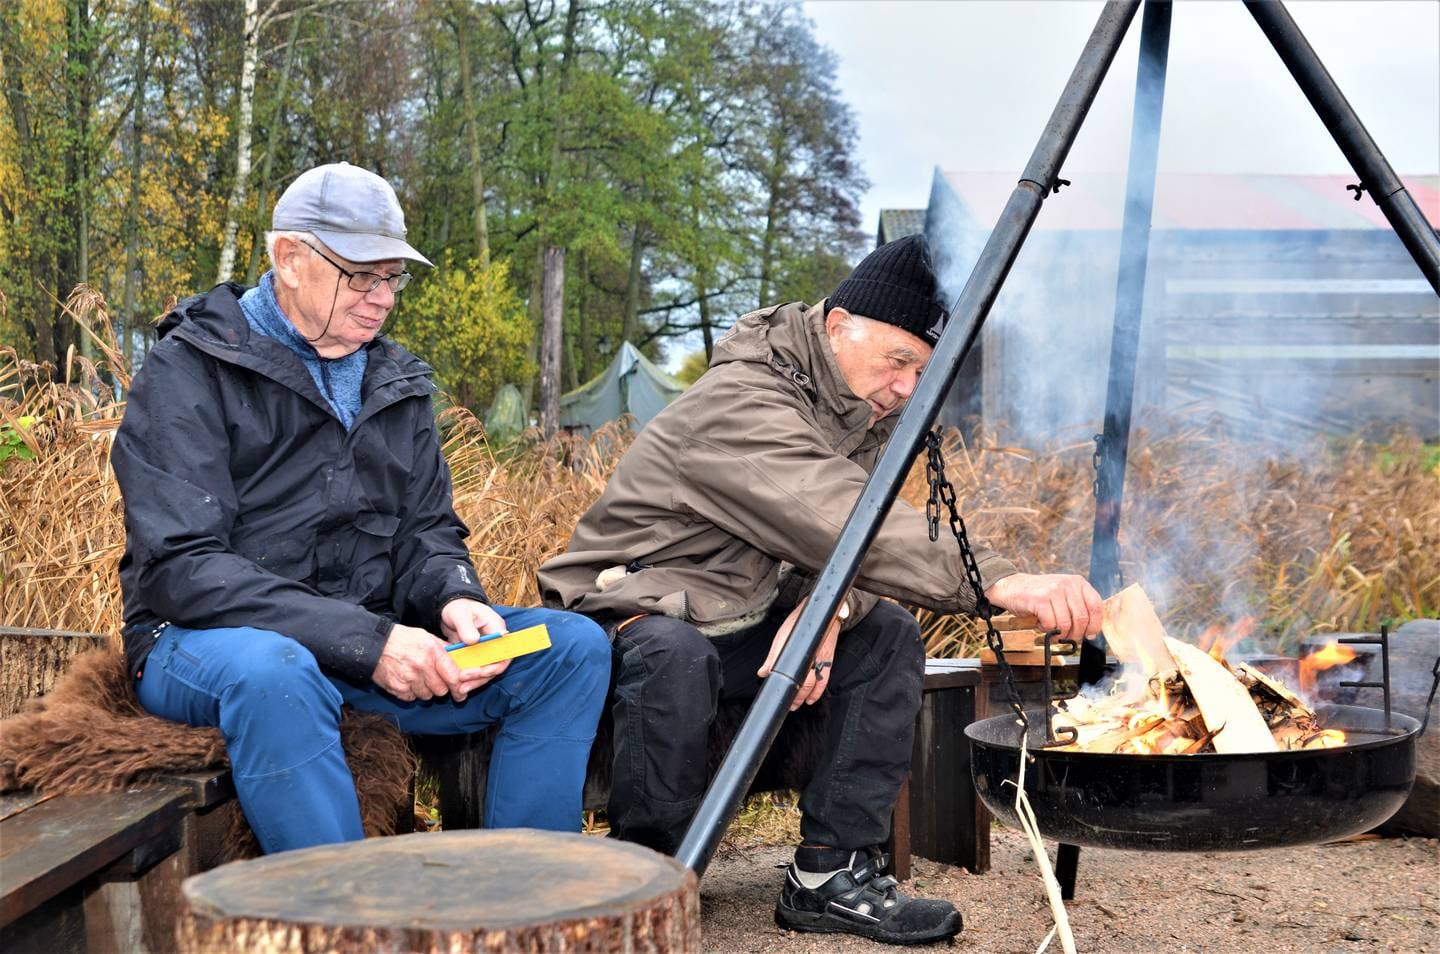 Dugnad og frivillighet er også sosialt fellesskap. Det setter Knut Jonassen og Paul Berthelsen pris på.